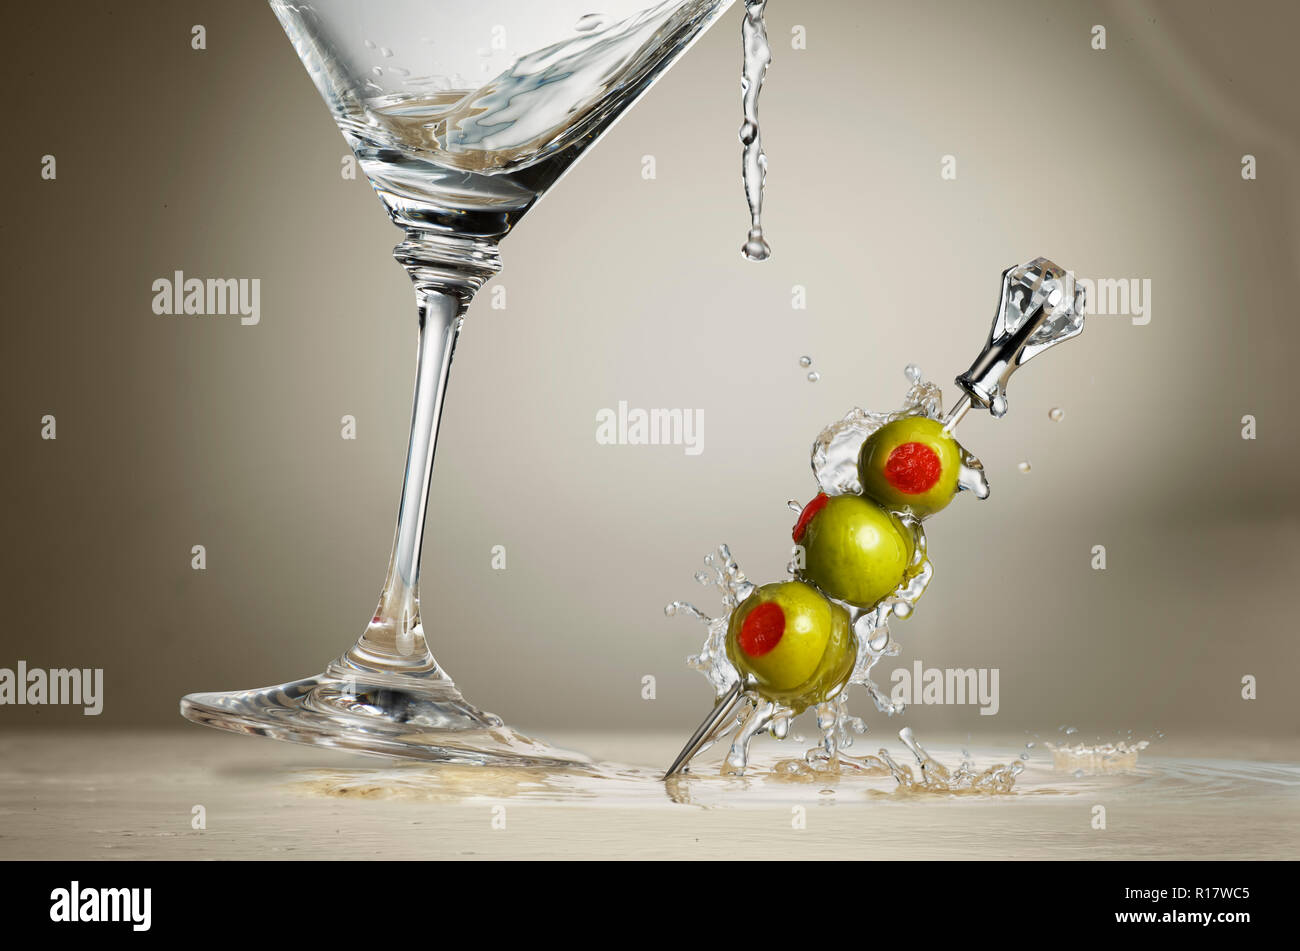 Imagen recortada de copa de martini salpicaduras de líquido y las aceitunas sobre la superficie, fondo gris Foto de stock